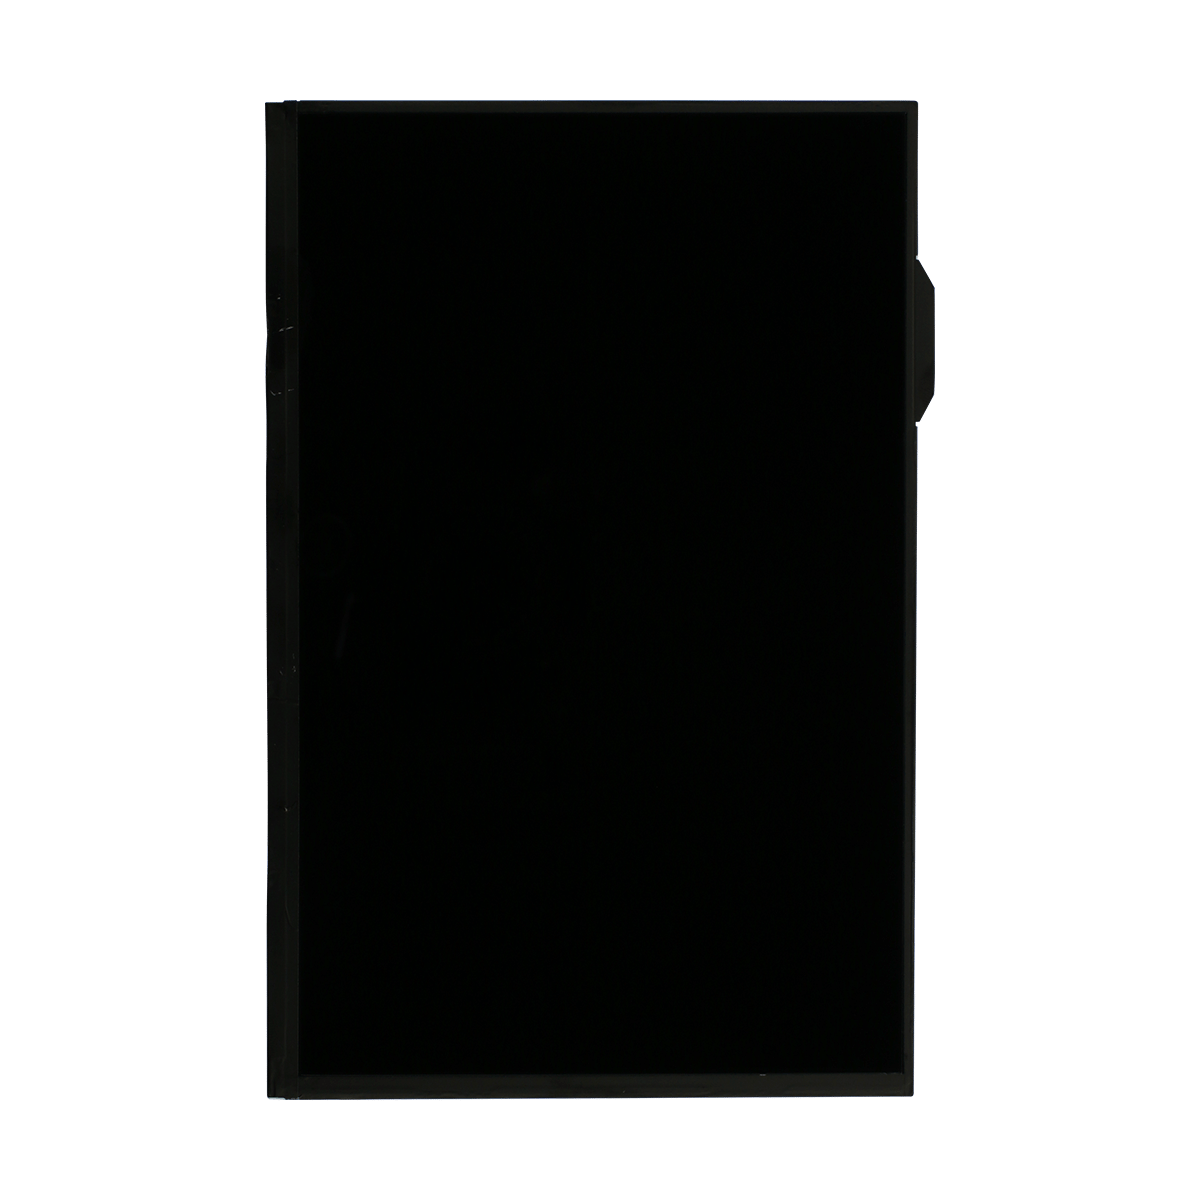 Samsung Galaxy Note 10.1 N8000/N8010/N8013 LCD Replacement